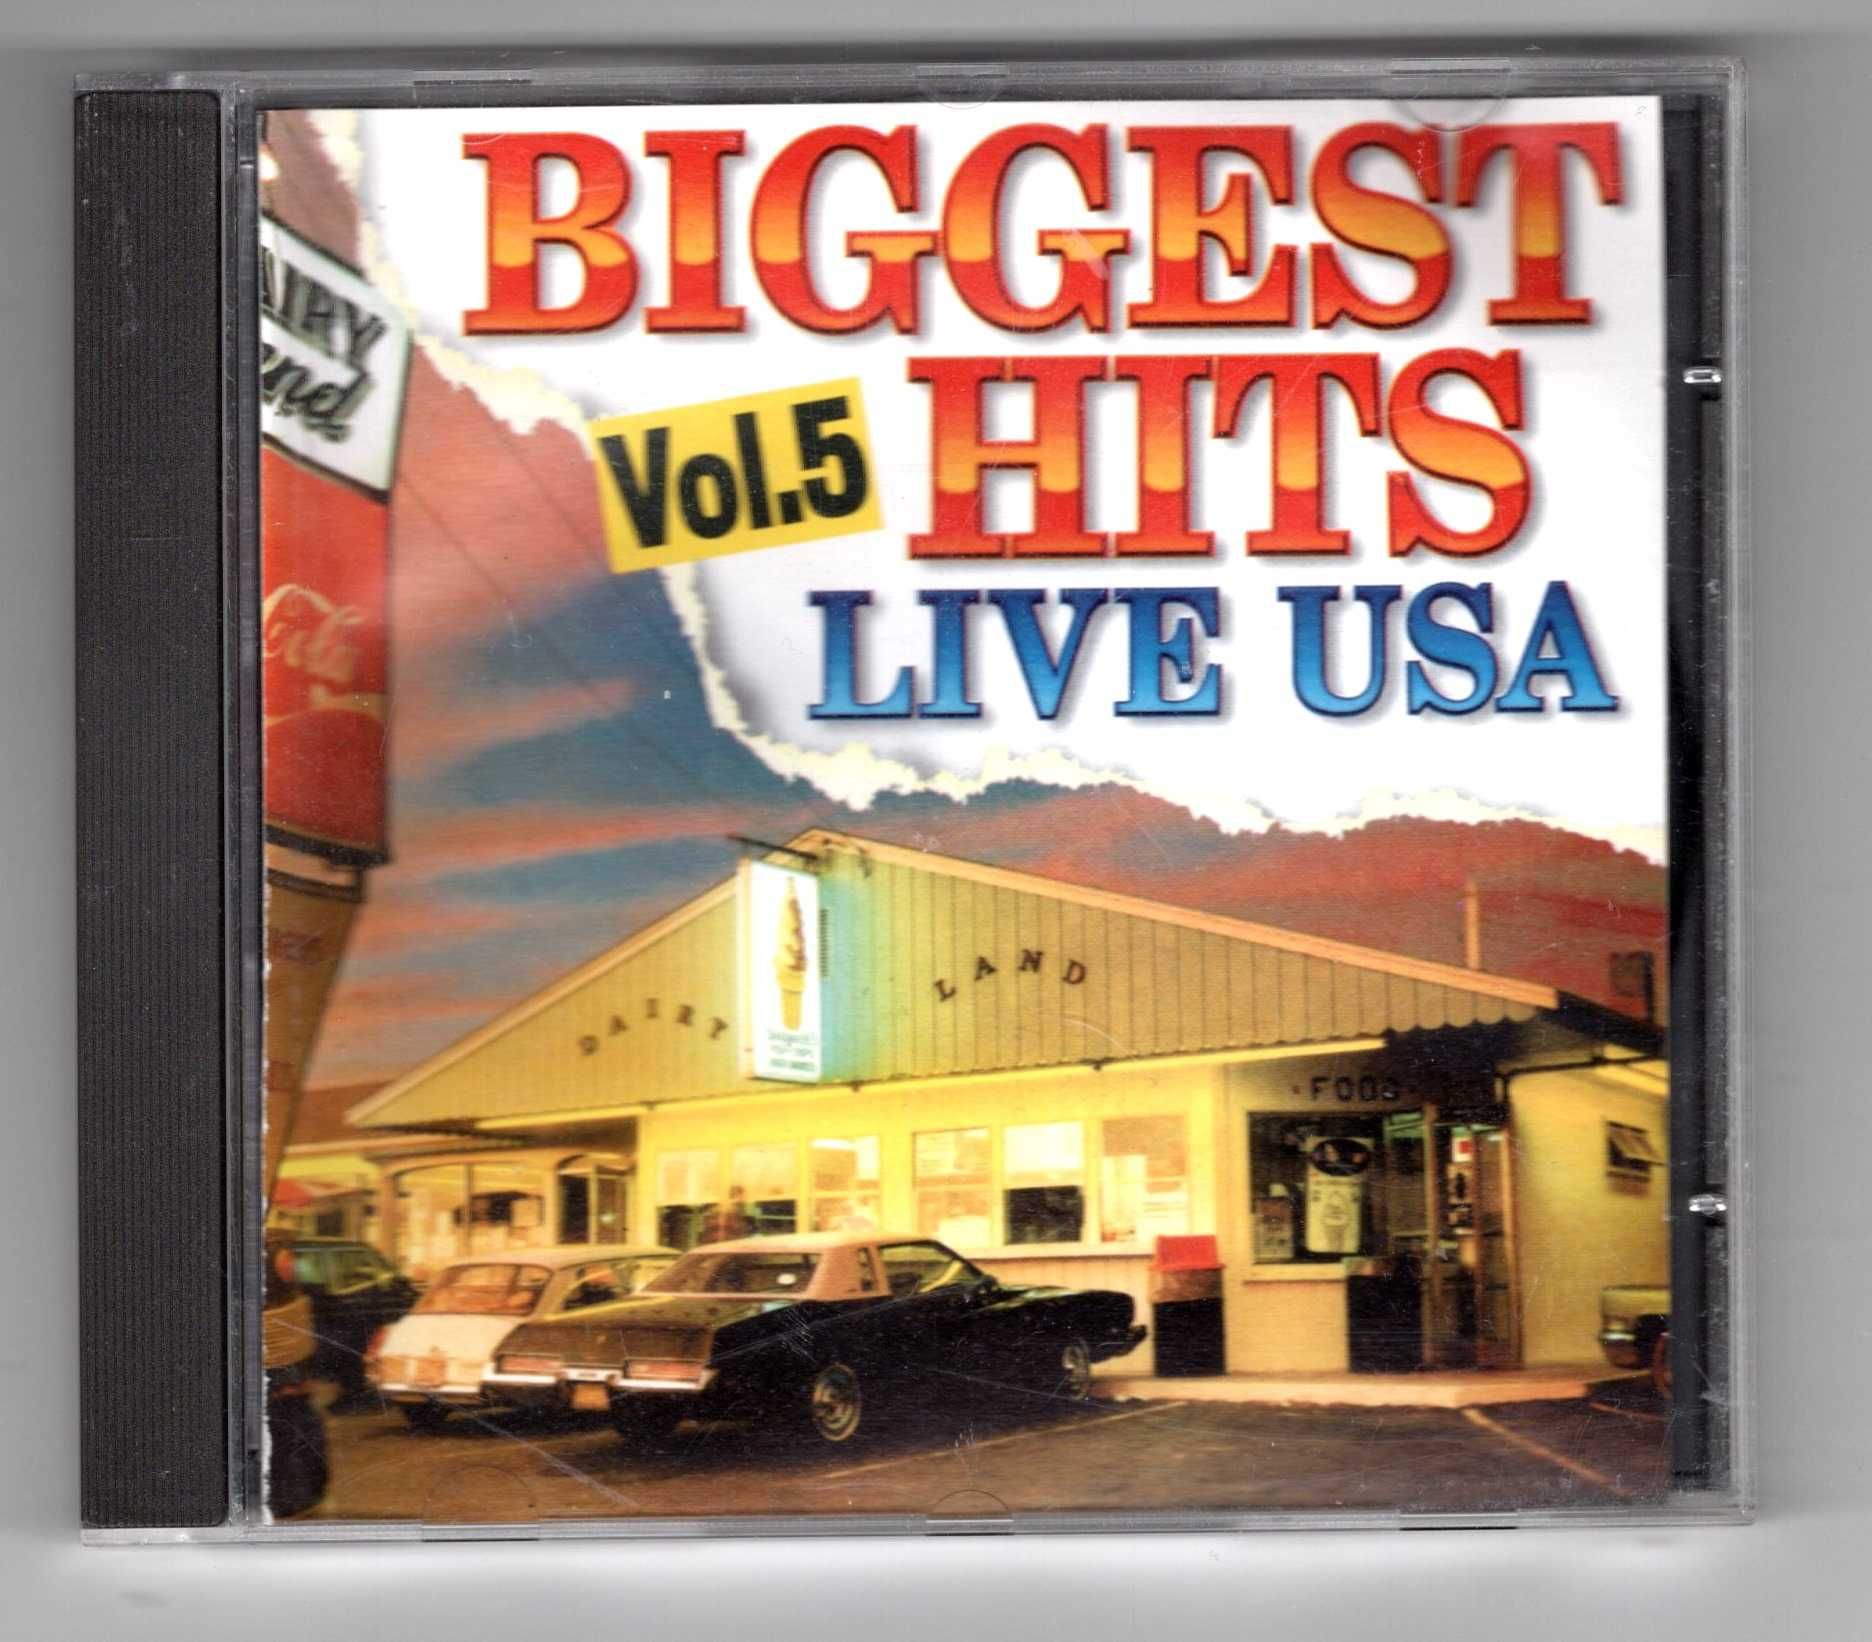 Biggest Hits Live USA Vol. 5 (CD)  Michael Jackson, Prince